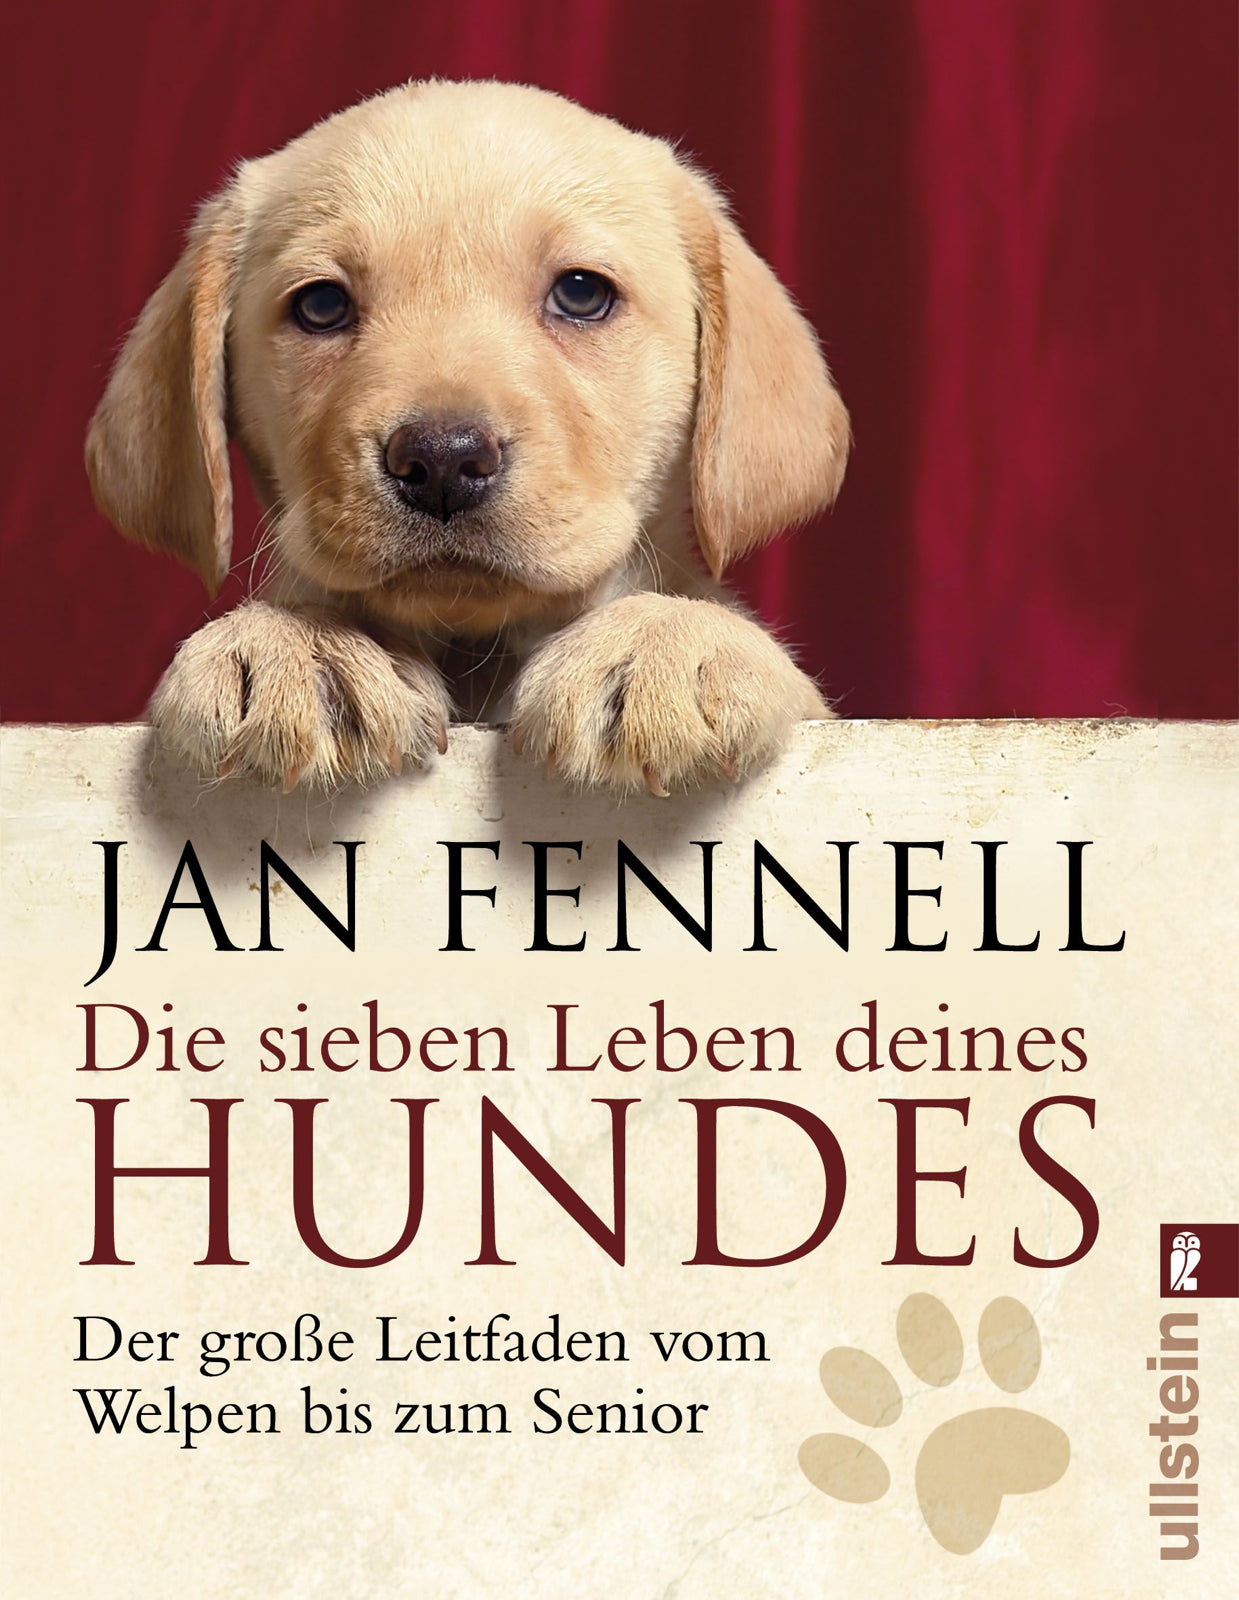 Jan Fennell - Die sieben Leben deines Hundes (Taschenbuch)